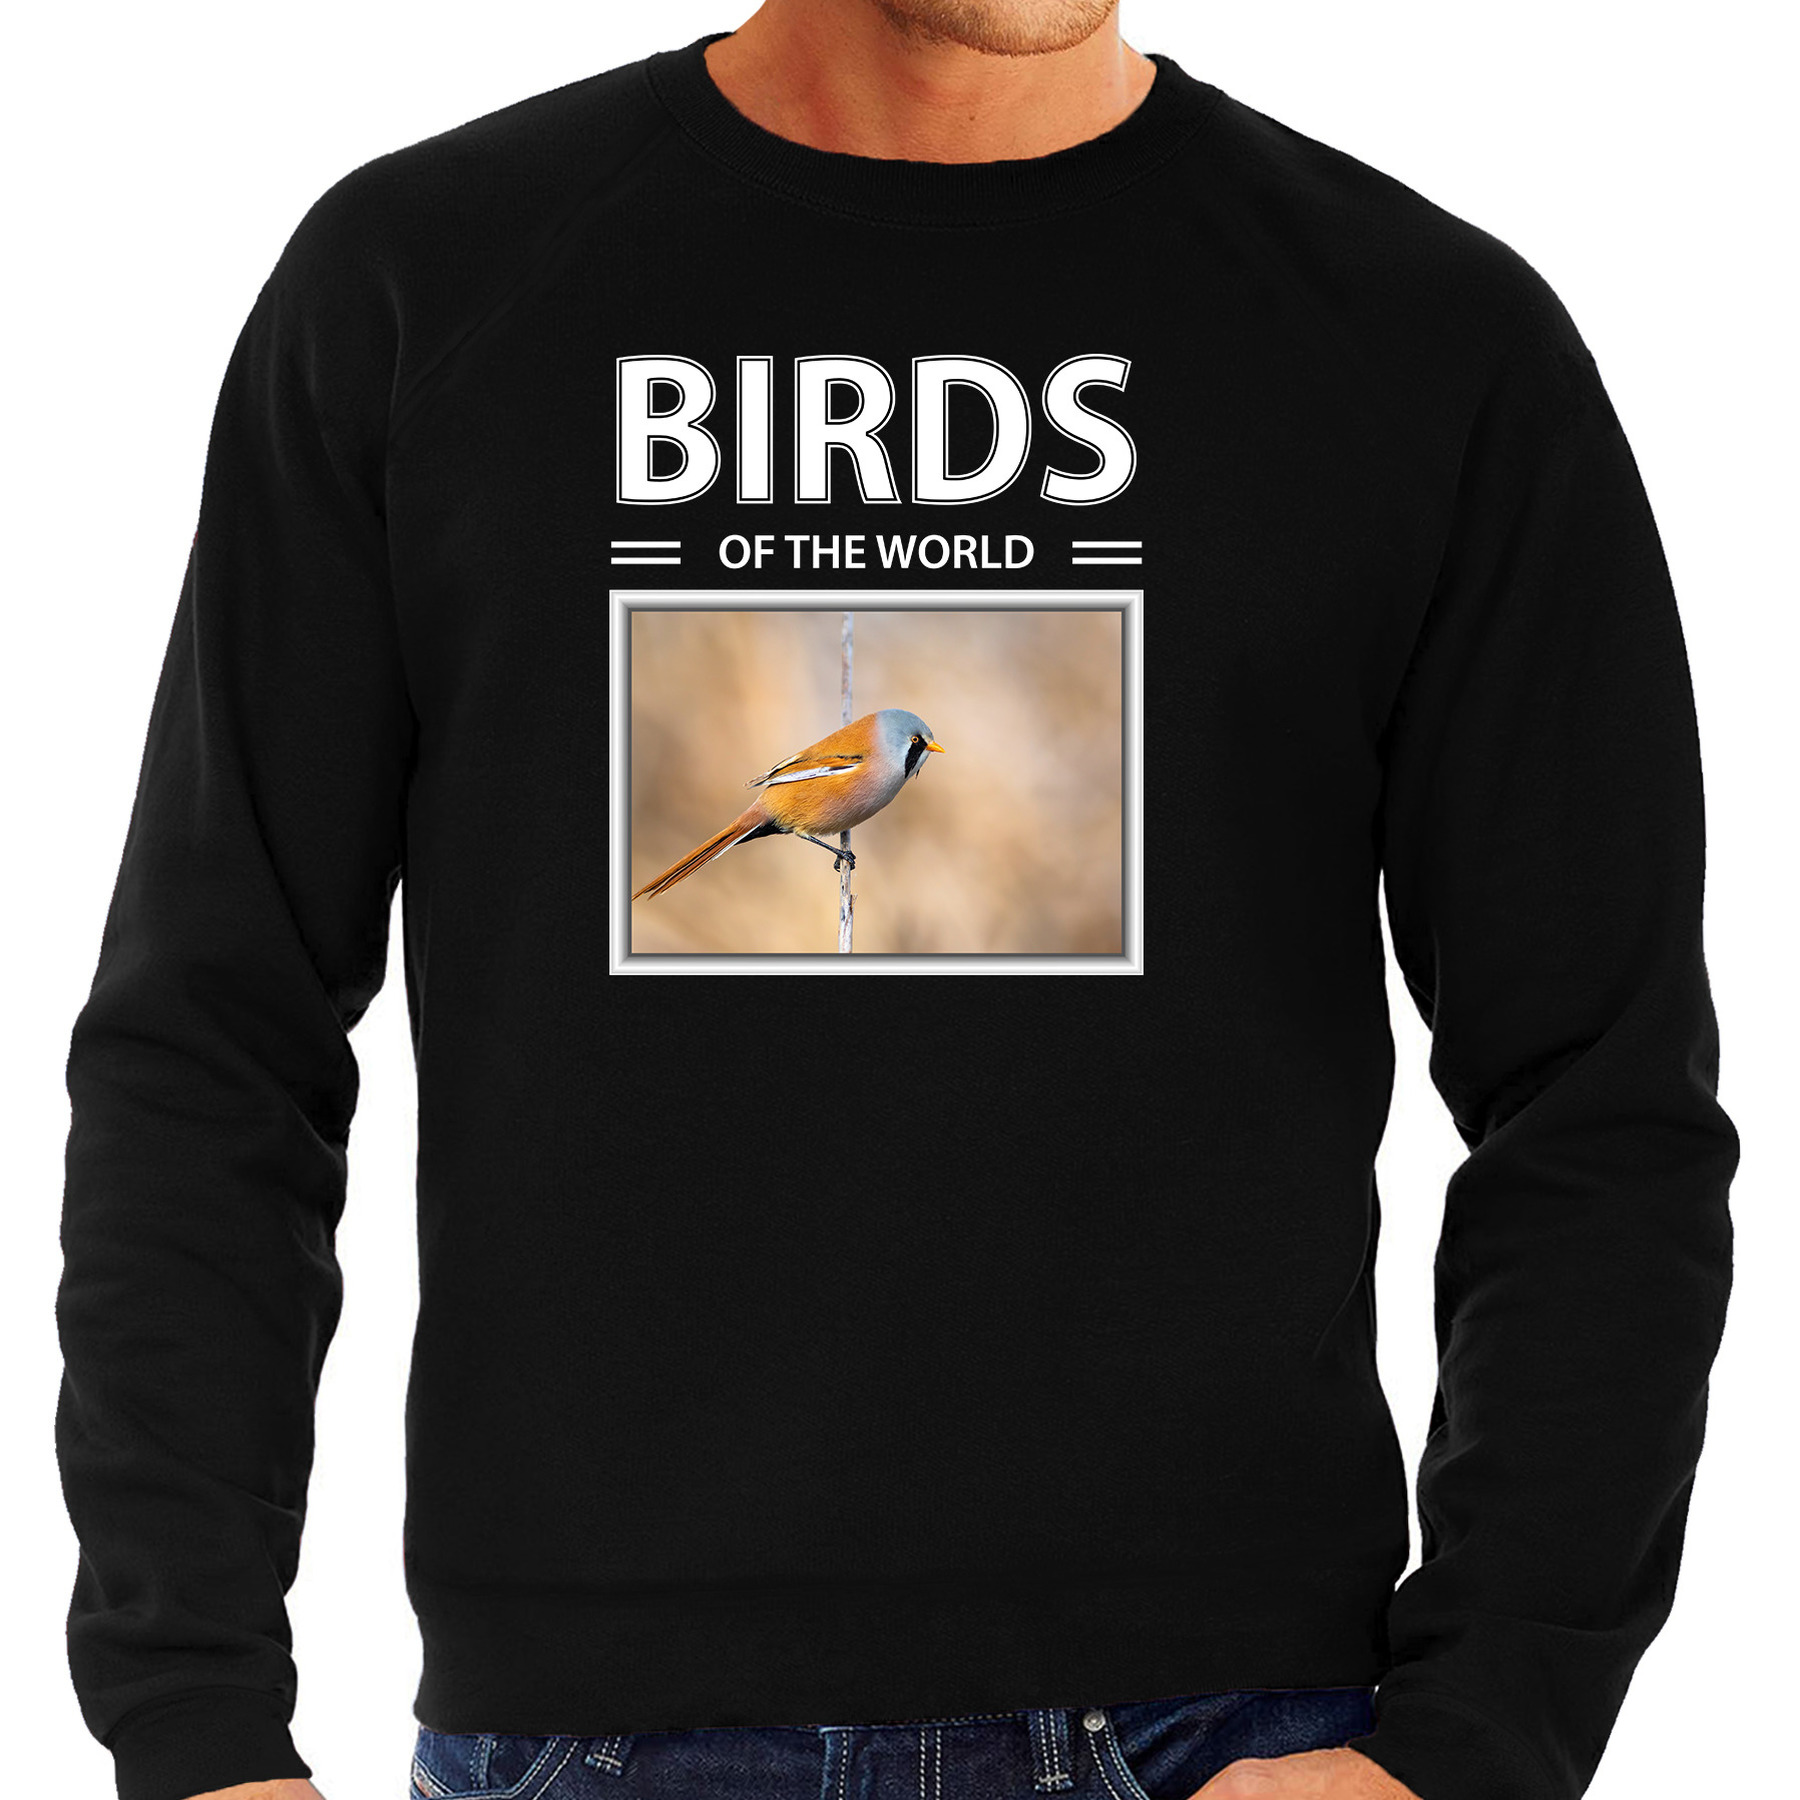 Baardmannetjes vogel sweater / trui met dieren foto birds of the world zwart voor heren